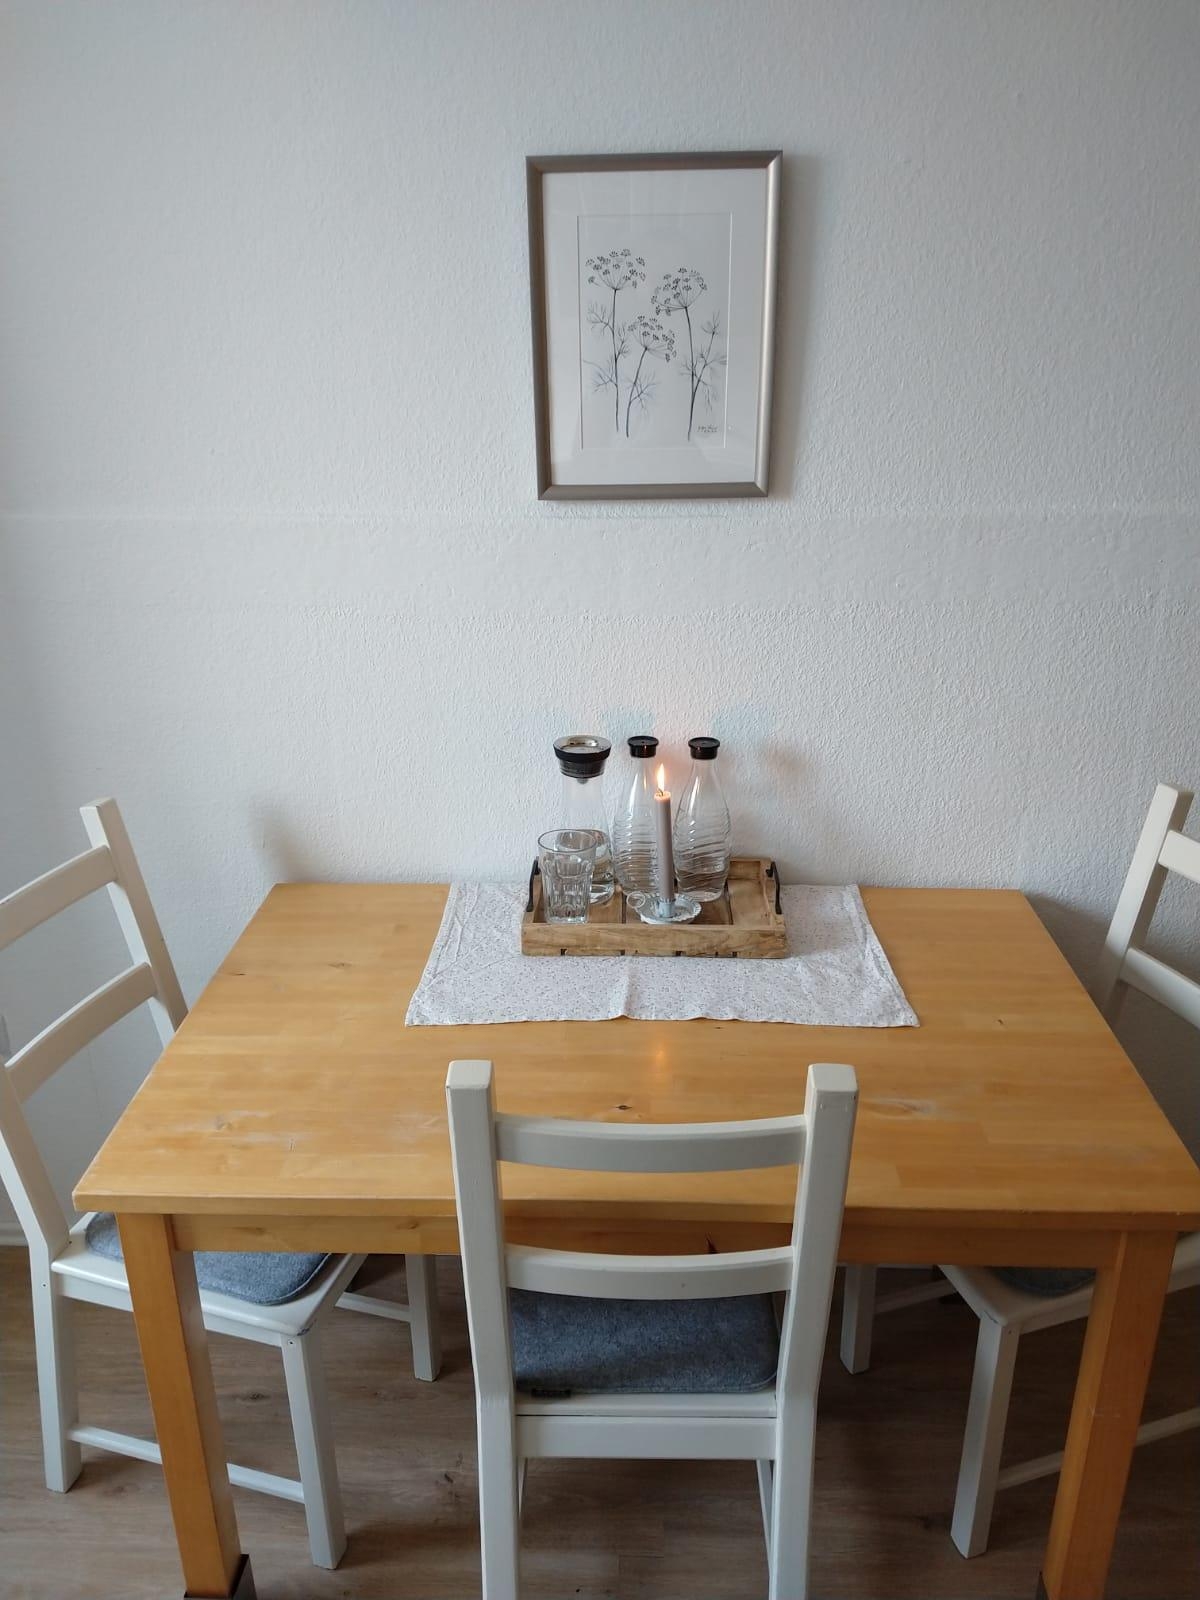 Diese Stühle haben schon oft ihre Farbe gewechselt... #küche #küchentisch #stühle #tablett #weiß #kleineküche